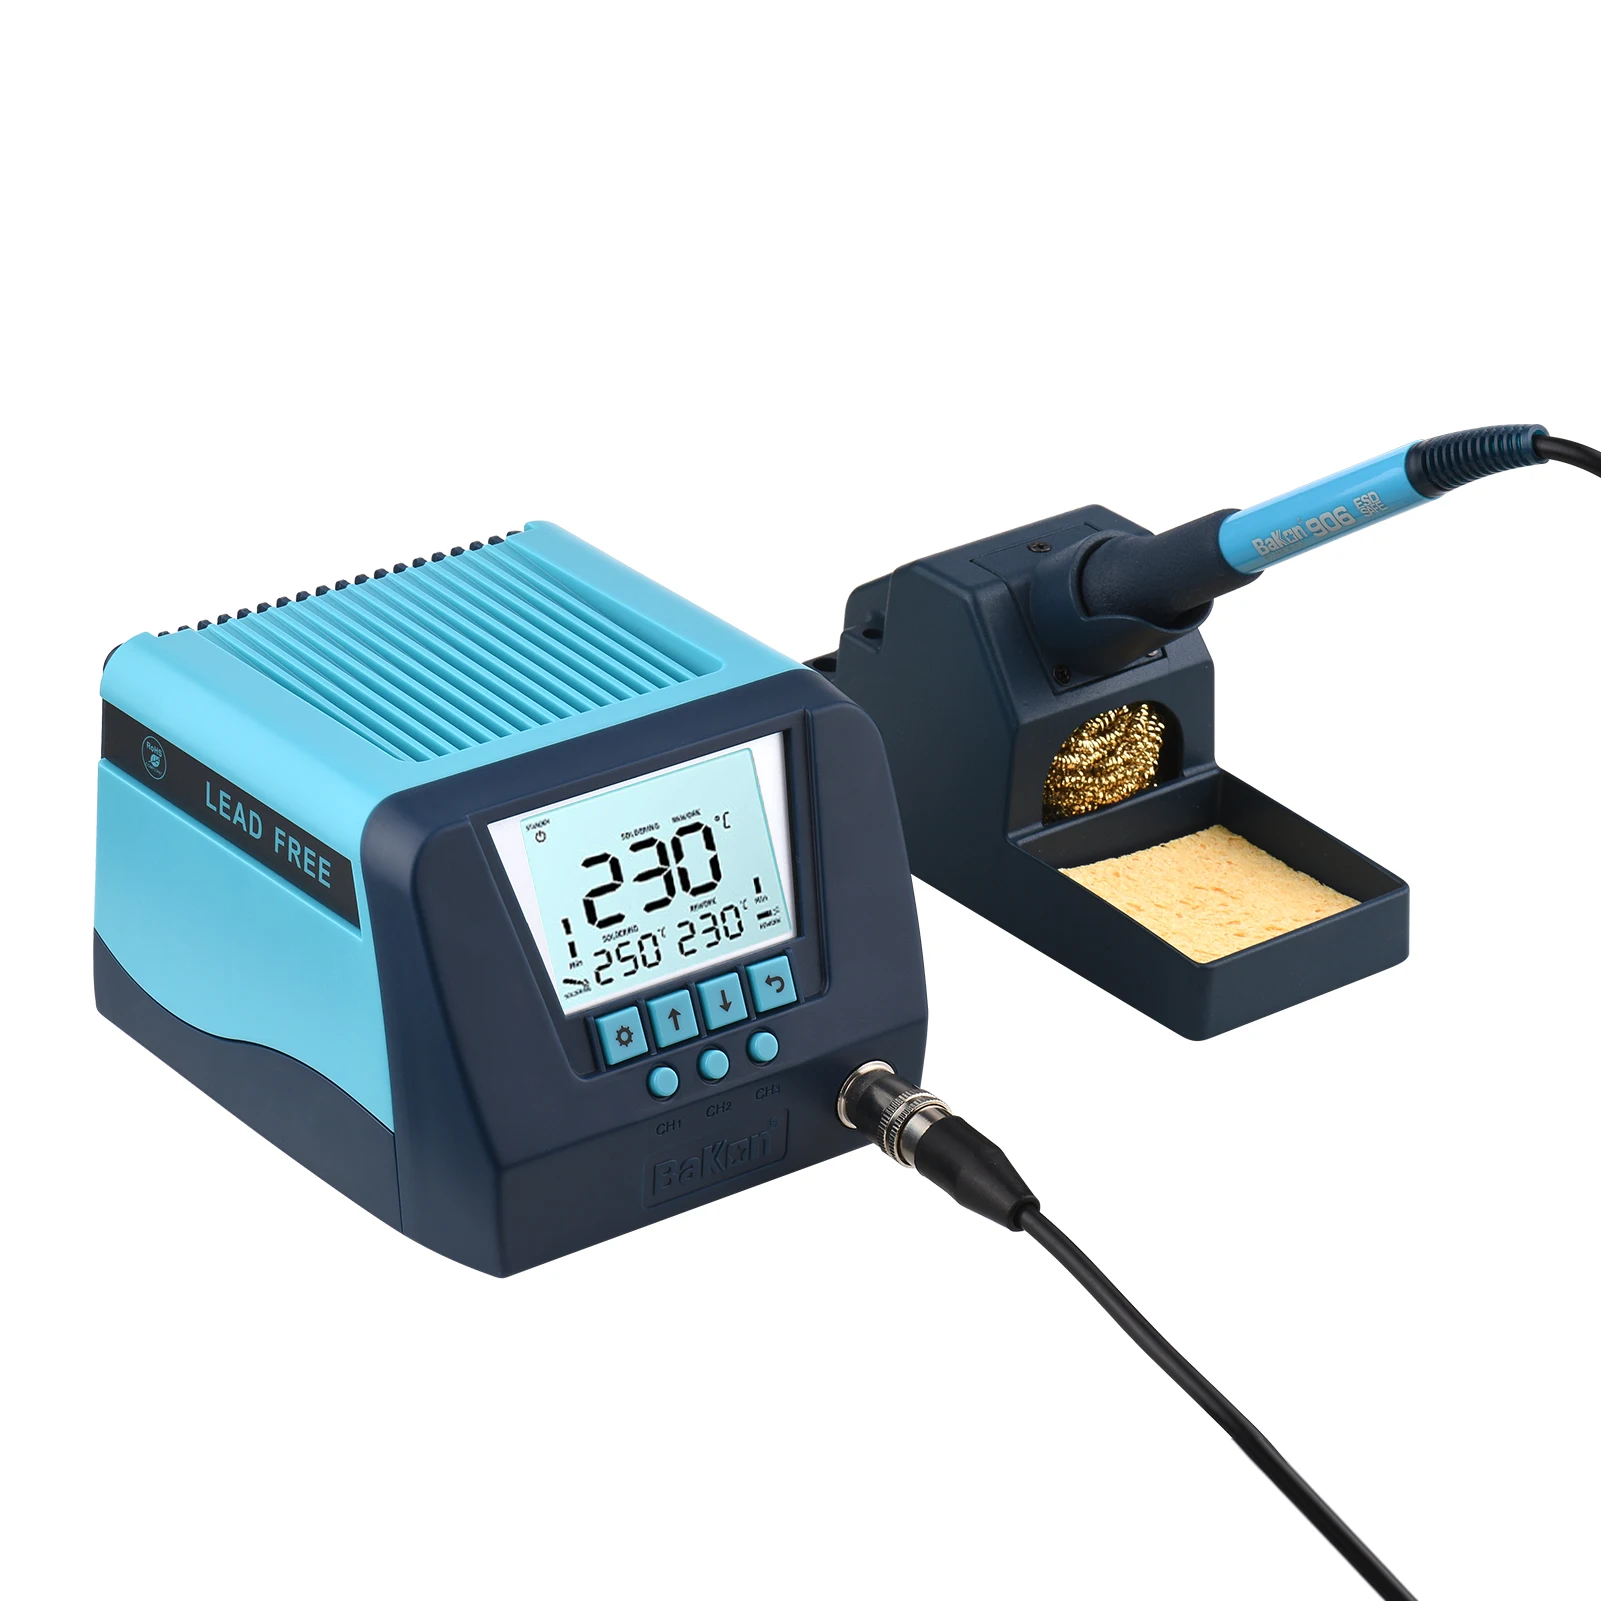 

Паяльная станция BK90 90 Вт, паяльная станция с умным контролем температуры, автоматическим спящим кодом и ЖК-дисплеем, быстрым нагревом